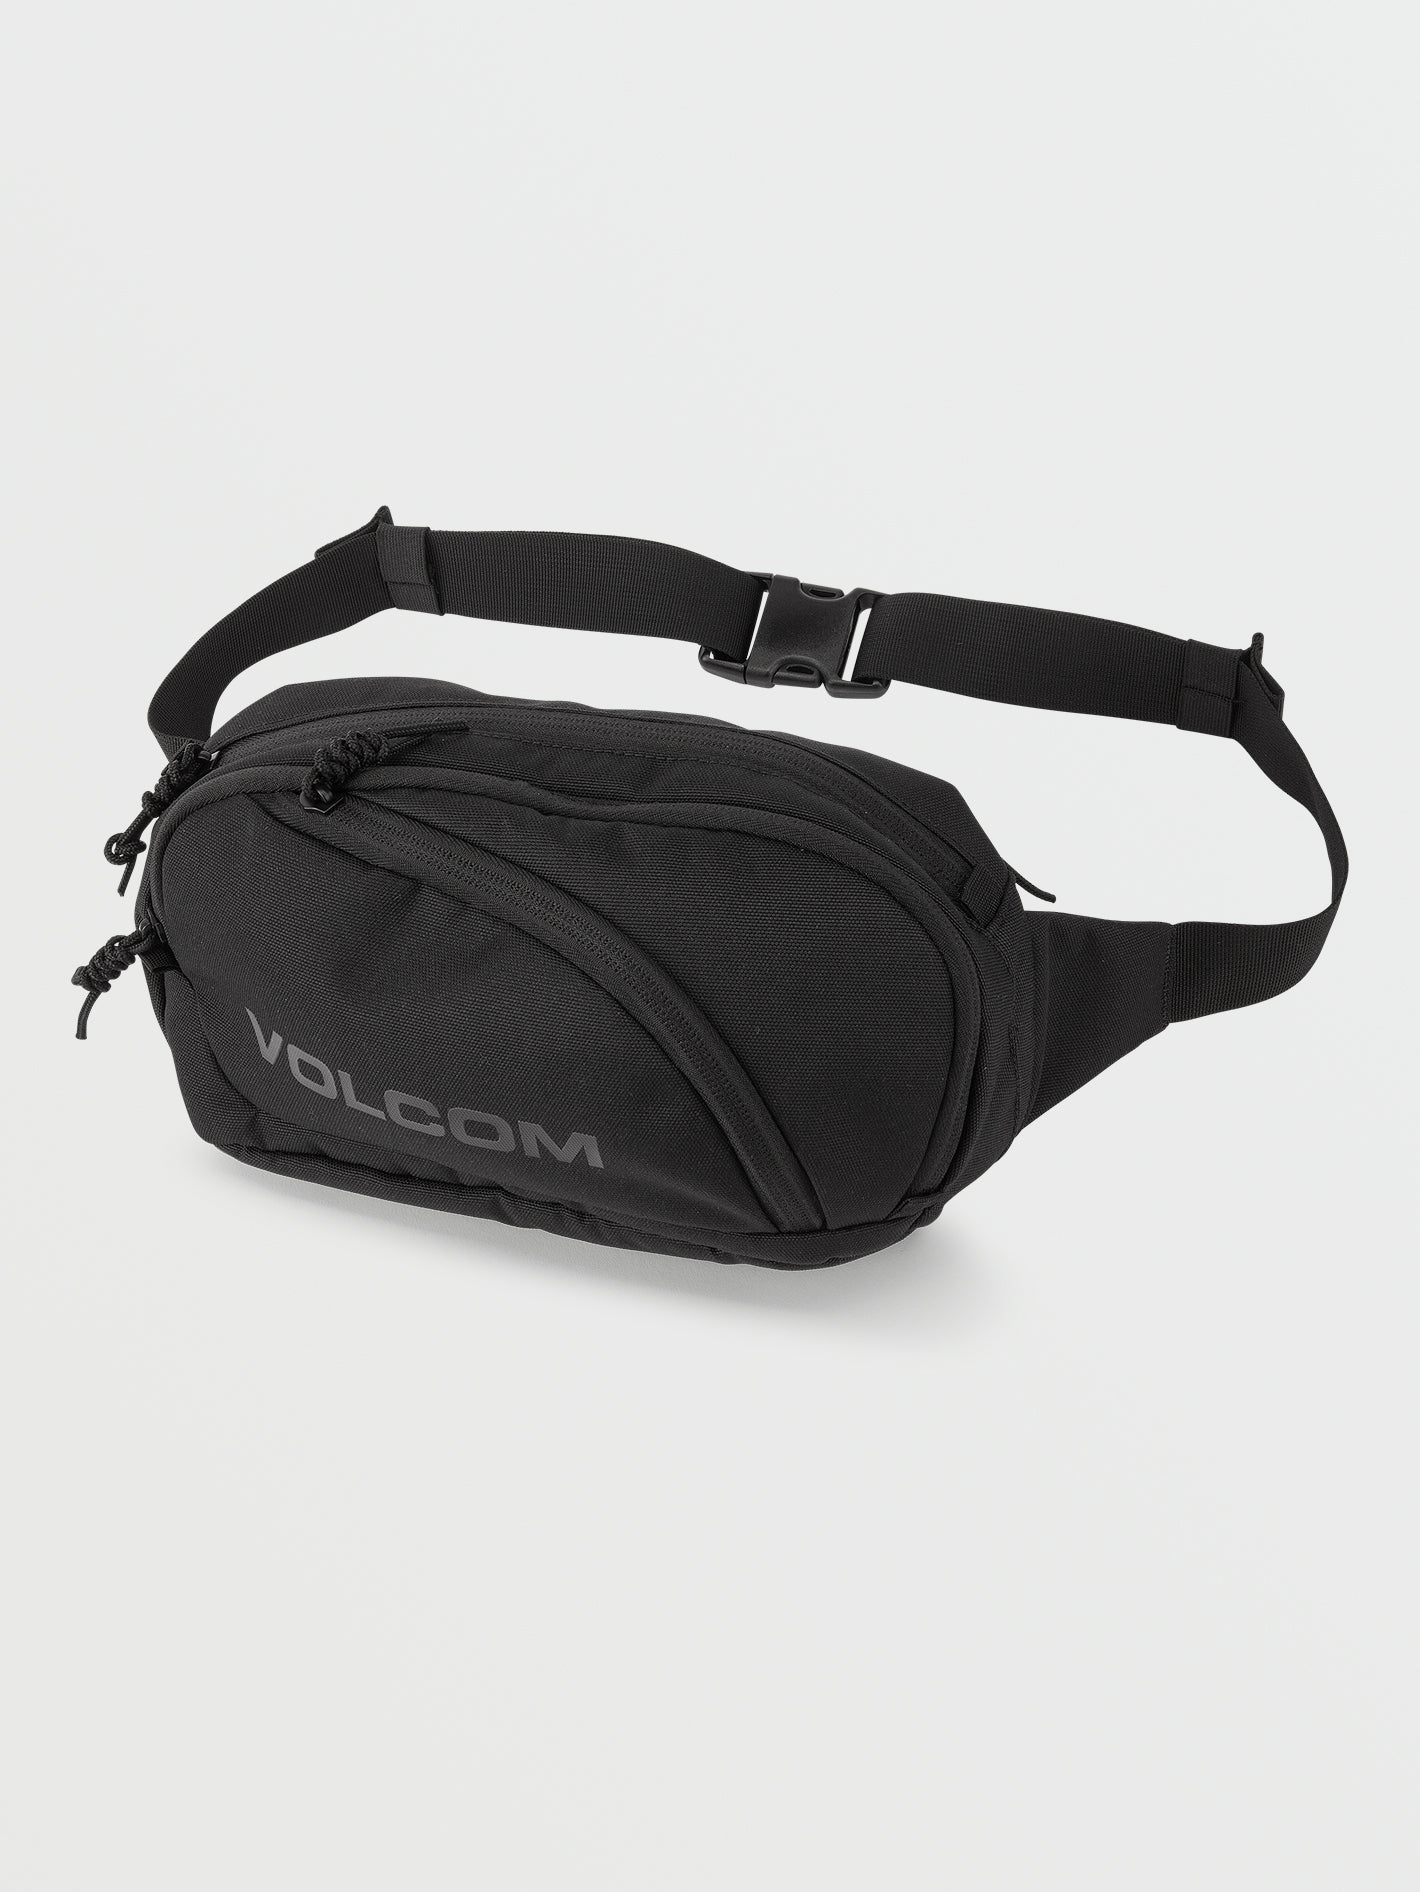 Volcom Full Size Waist Pack - Black on Black (D6512300_BKB) [F]